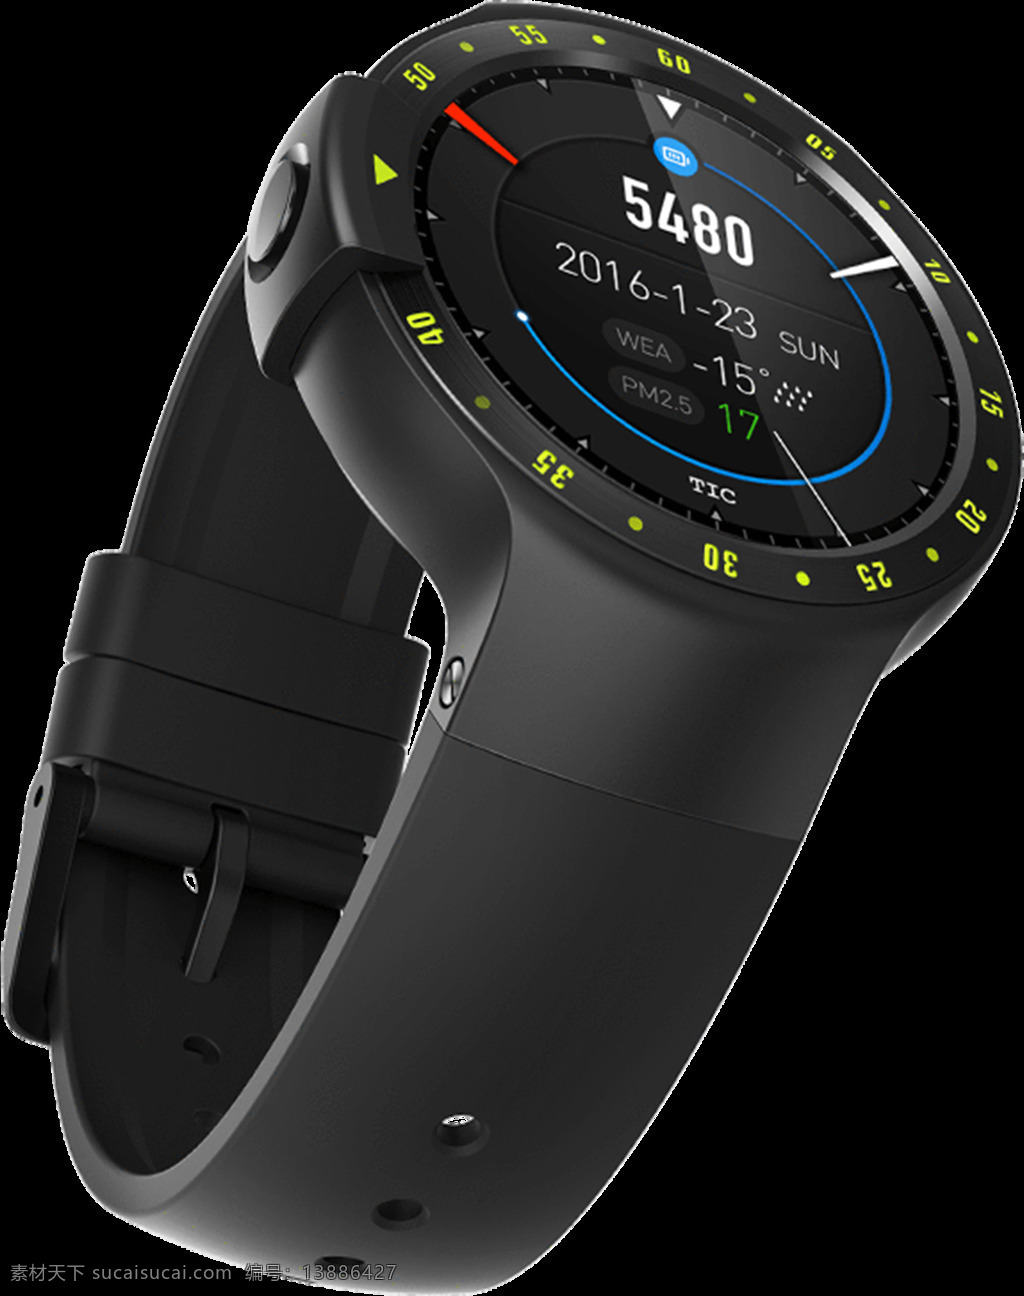 智能手表设计 工业设计 饰品 手表 手表设计 腕表 运动手表 智能手表